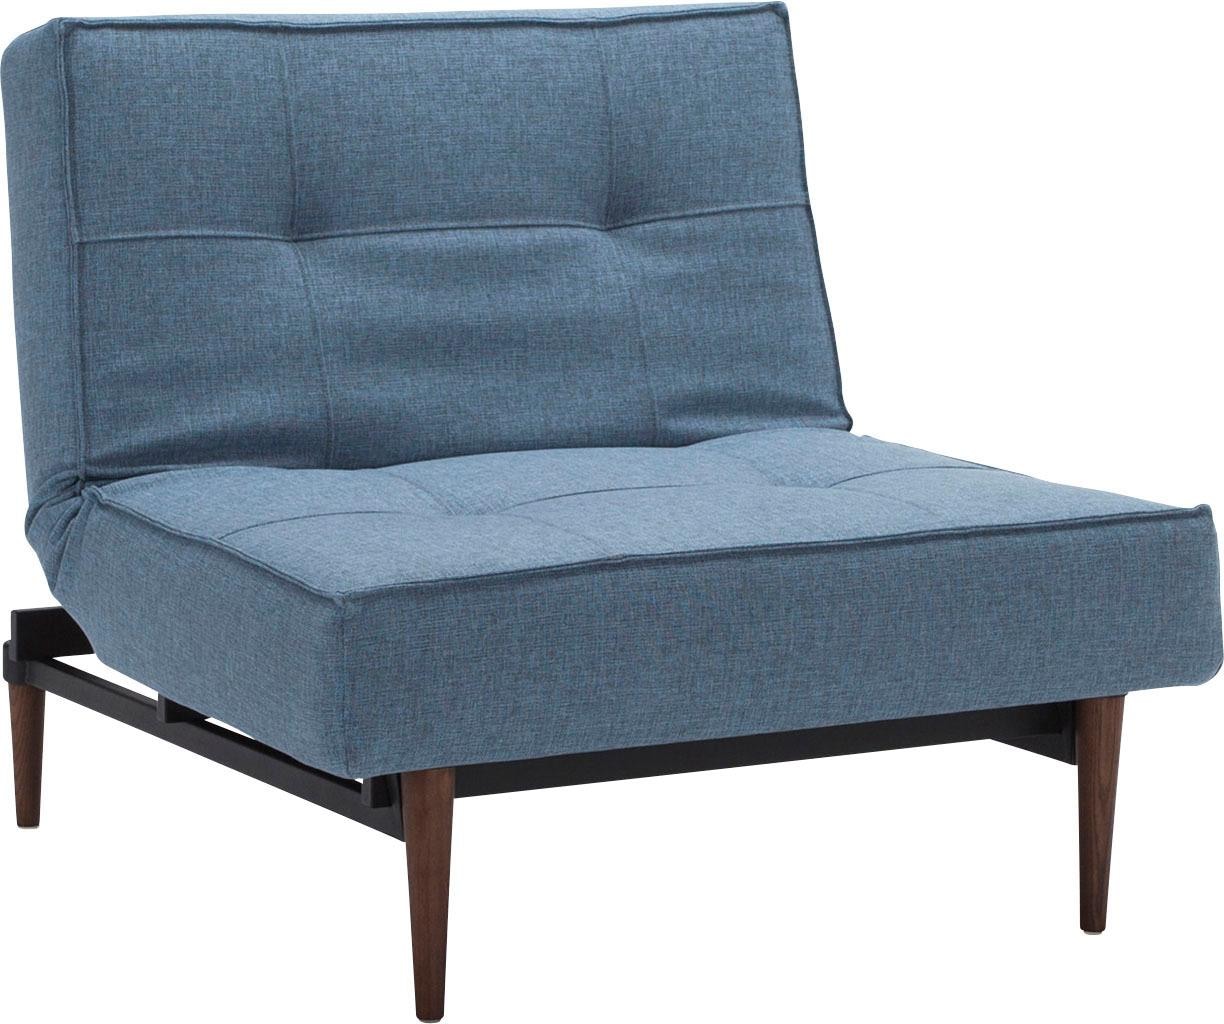 INNOVATION LIVING ™ Sessel "Splitback", mit dunklen Styletto Beinen, in skandinavischen Design